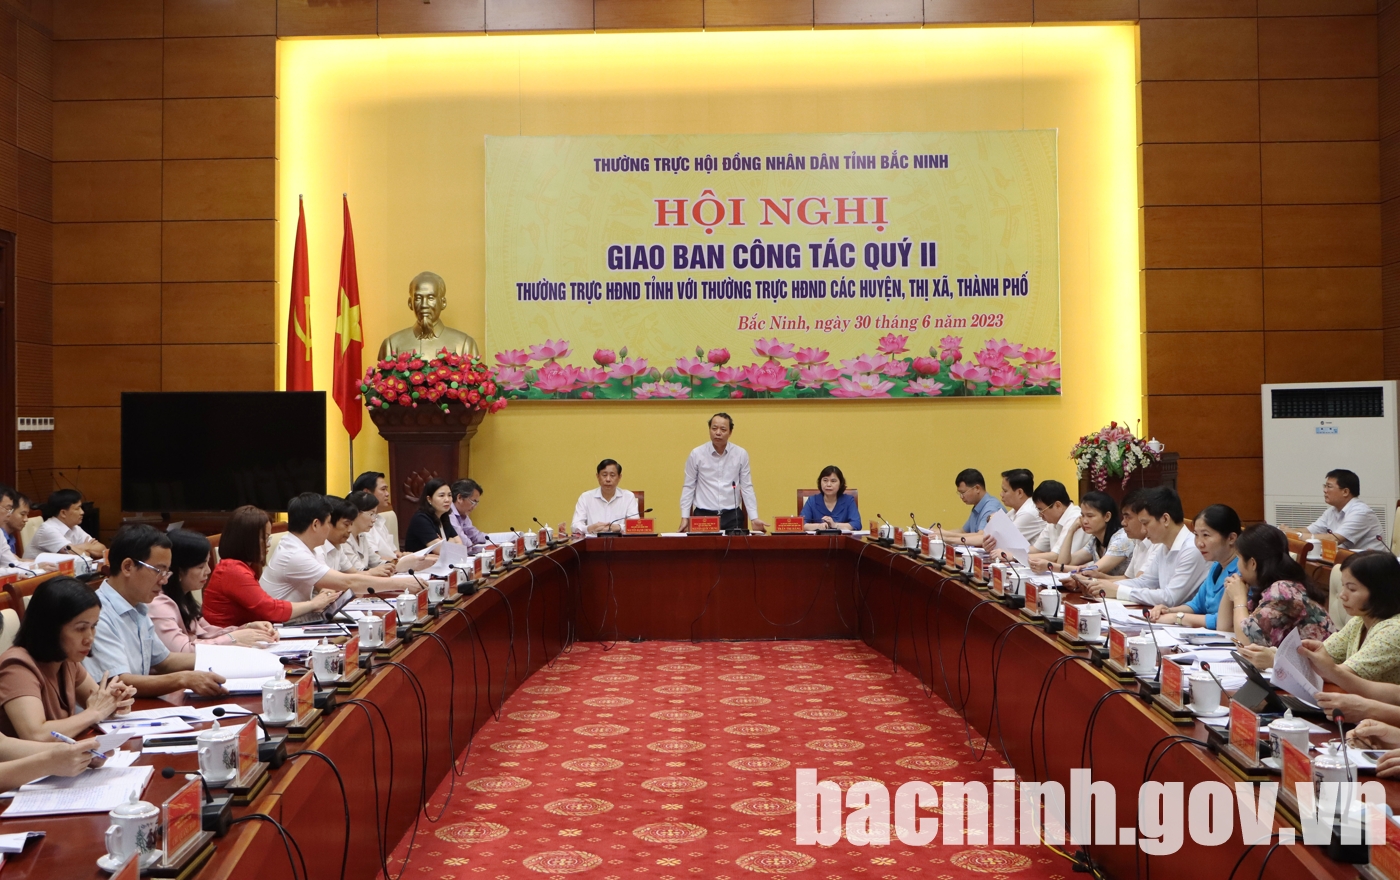 Thường trực HĐND tỉnh Bắc Ninh giao ban công tác quý II